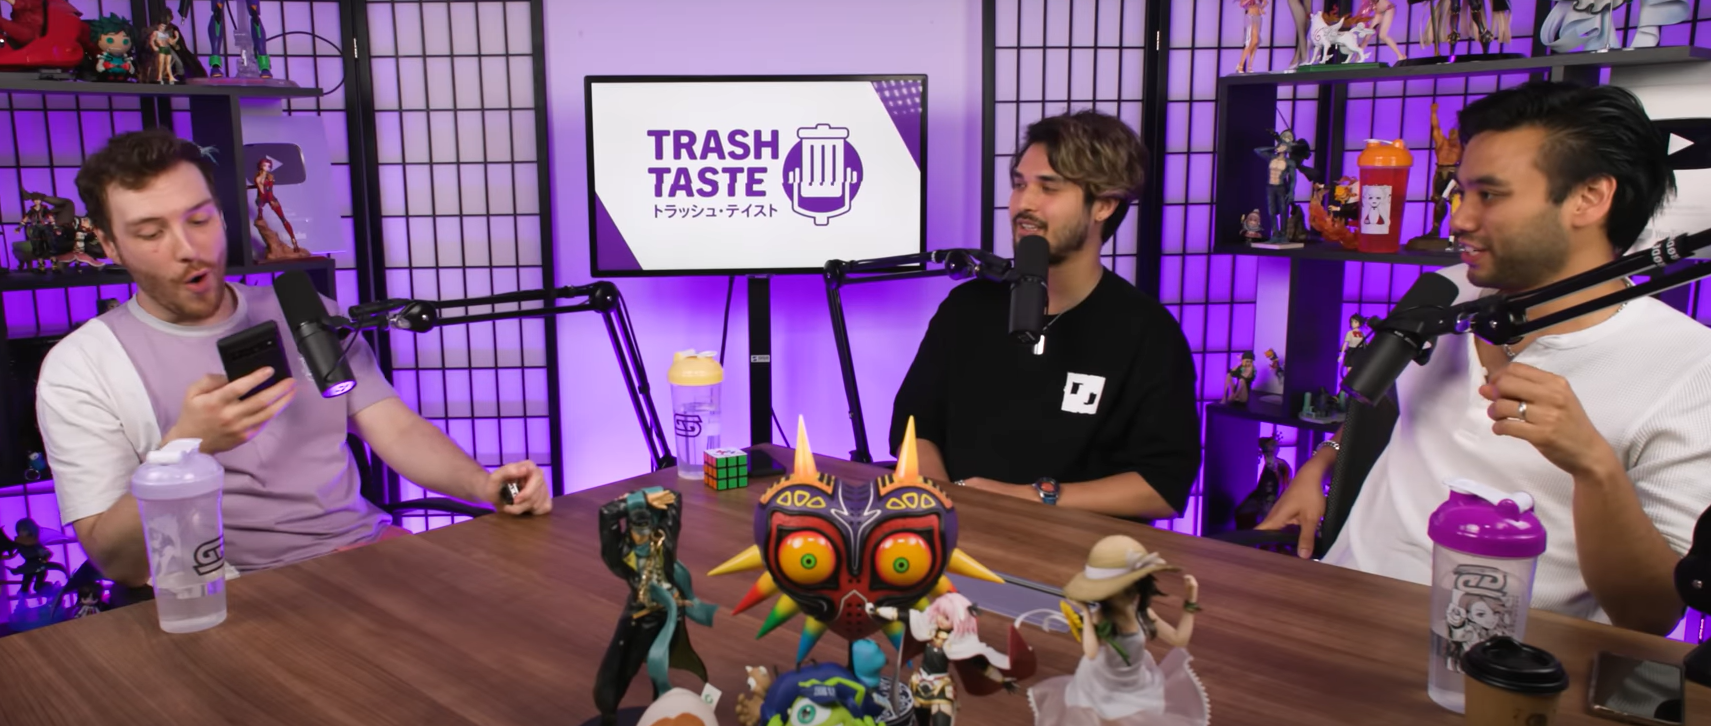 Still image from trash Taste panel video